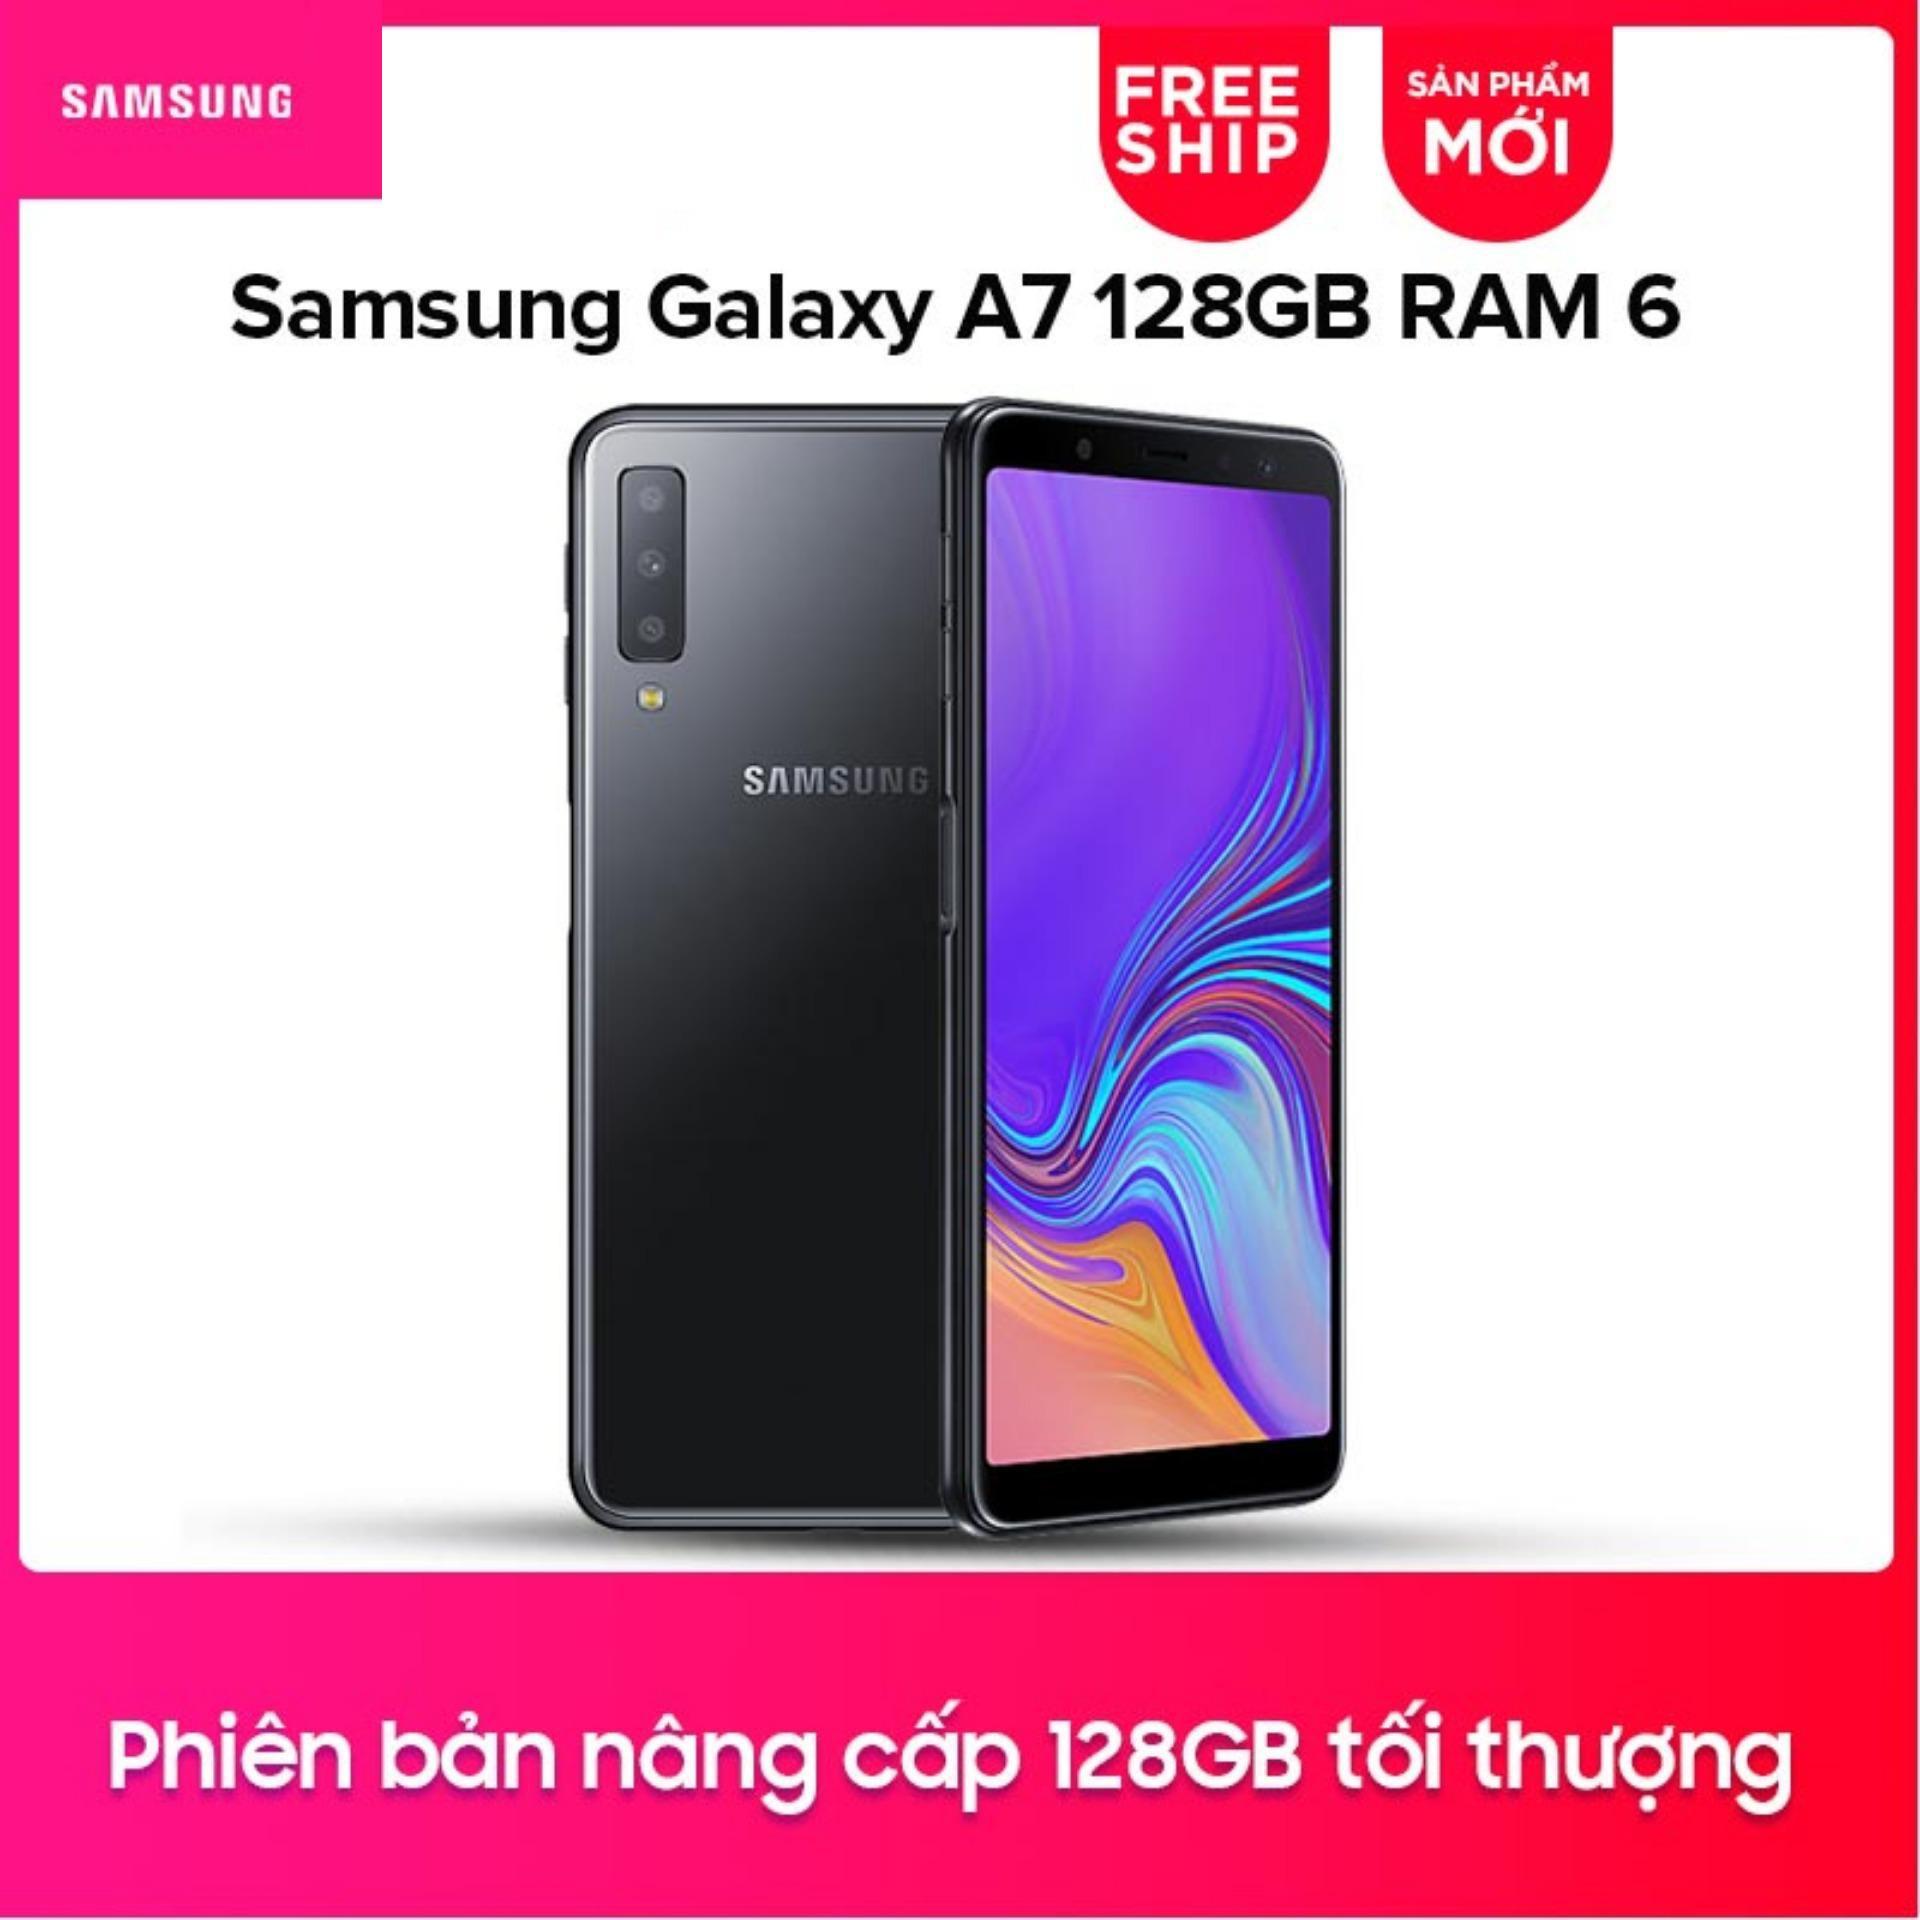 Điện thoại Samsung Galaxy A7 (2018) 128GB RAM 6G - Hãng phân phối chính thức